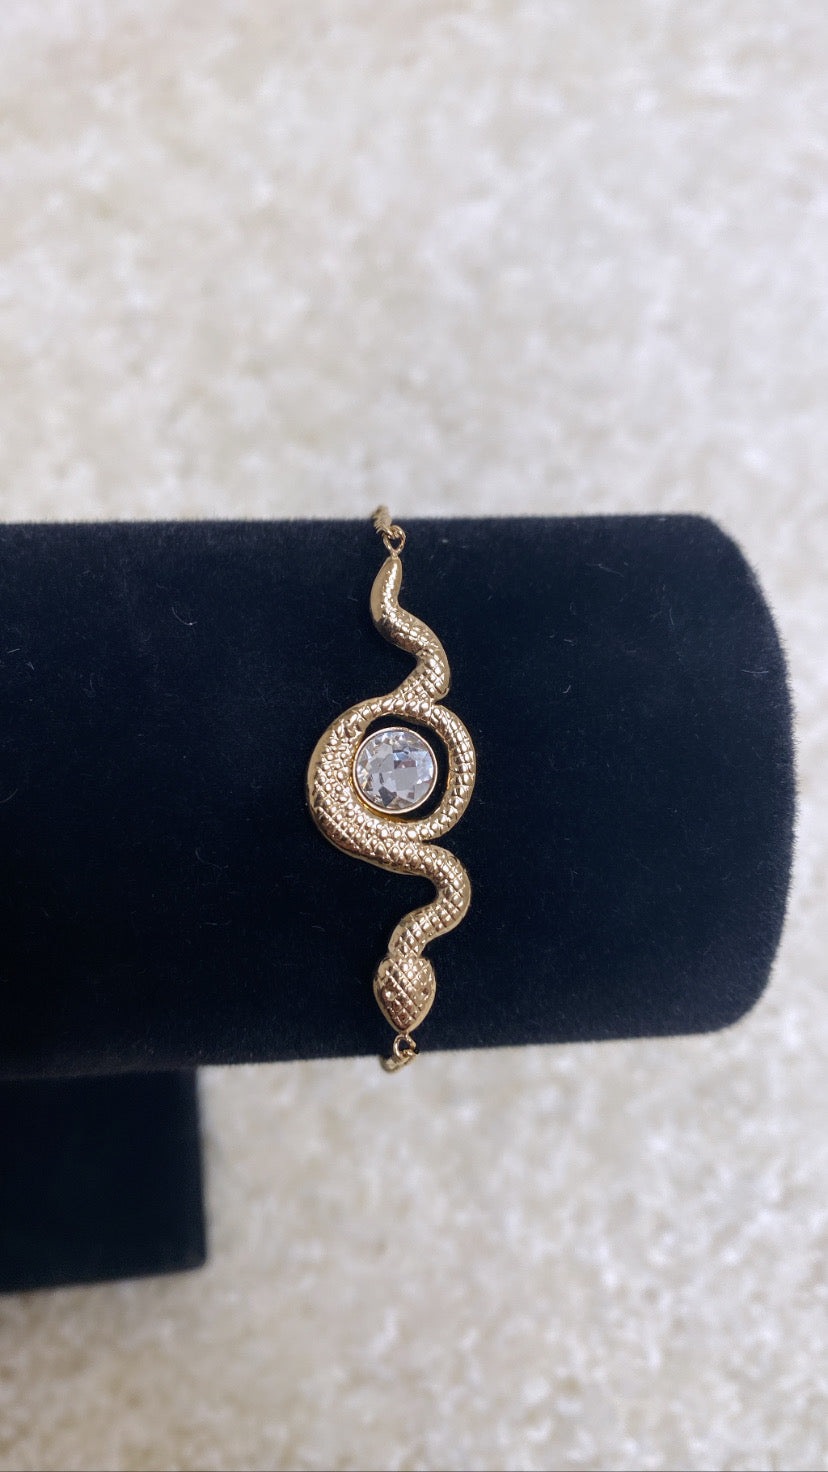 Bracelet serpent or